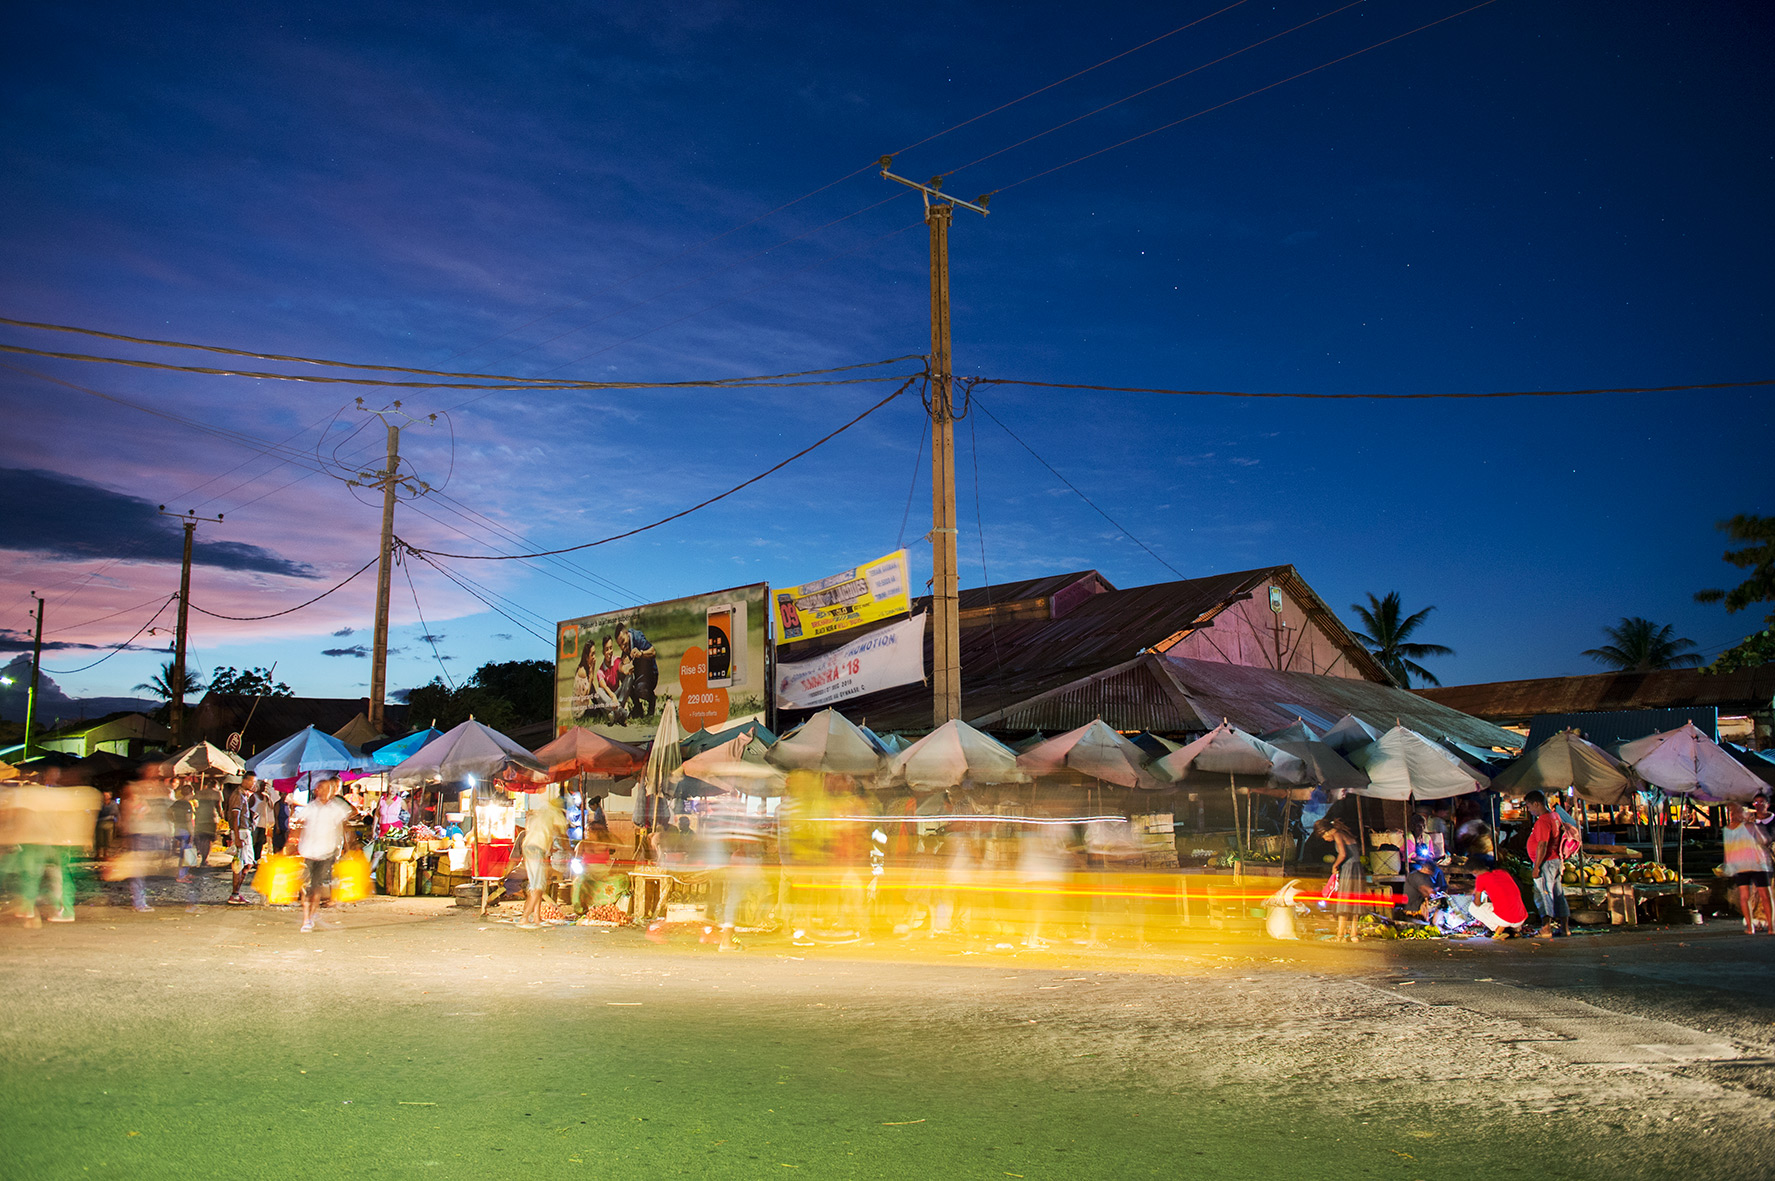 Nachtmarkt in Madagaskar, Bild aus Afrika erhältlich im Onlineshop